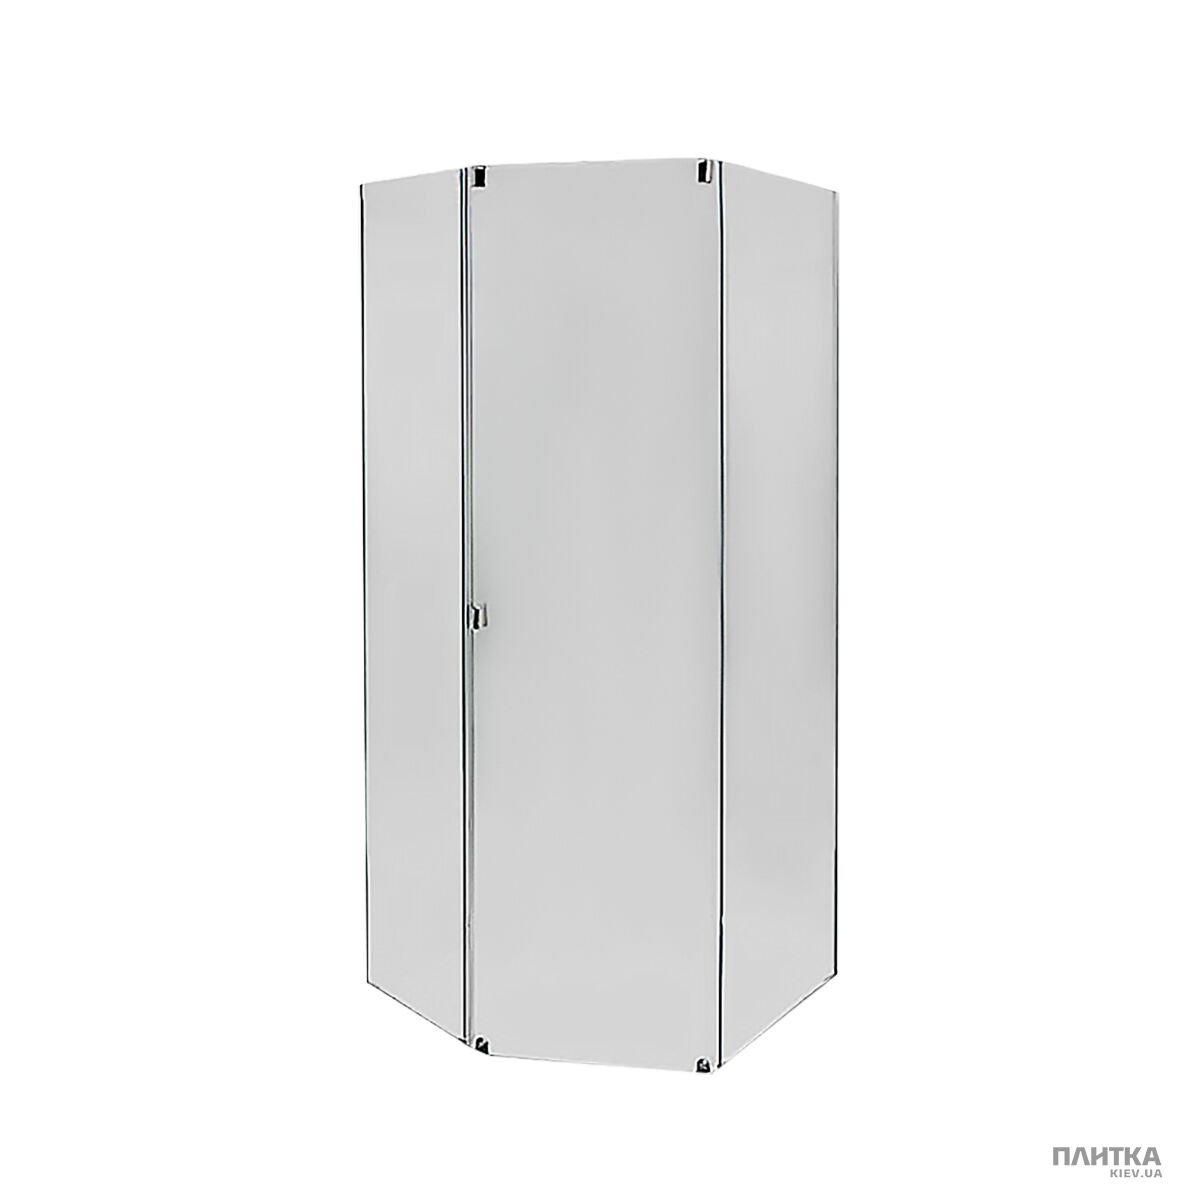 Комплектуючі: IDO Showerama 8-5 4985125015 Передні стінки та двері душової кабіни, фронтальна панель біла білий